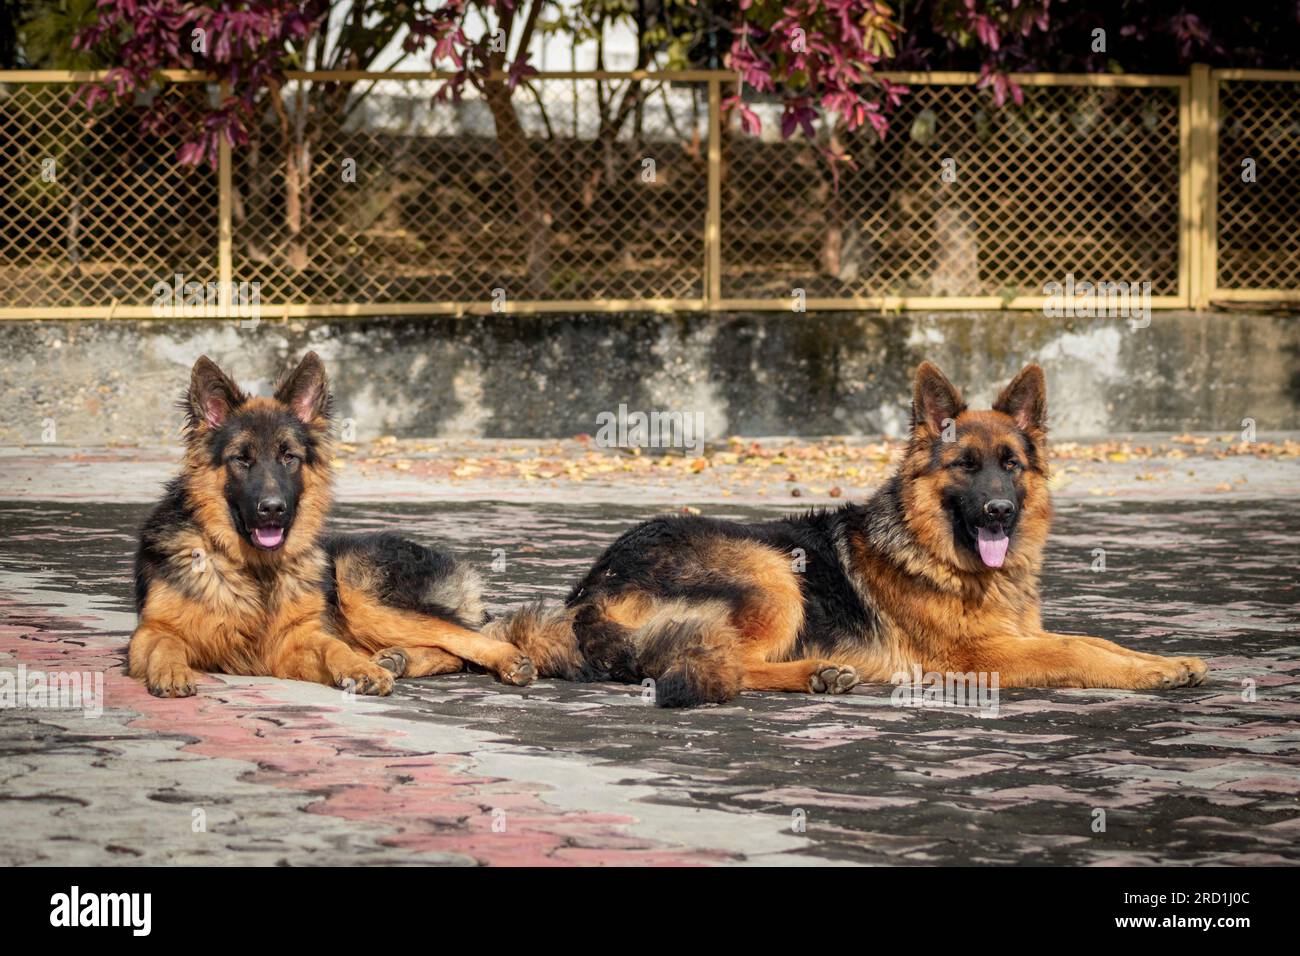 Zwei deutsche Hirten, die auf dem Boden in einem Haus sitzen. Der Schäferhund ist eine beliebte Hunderasse. Stockfoto